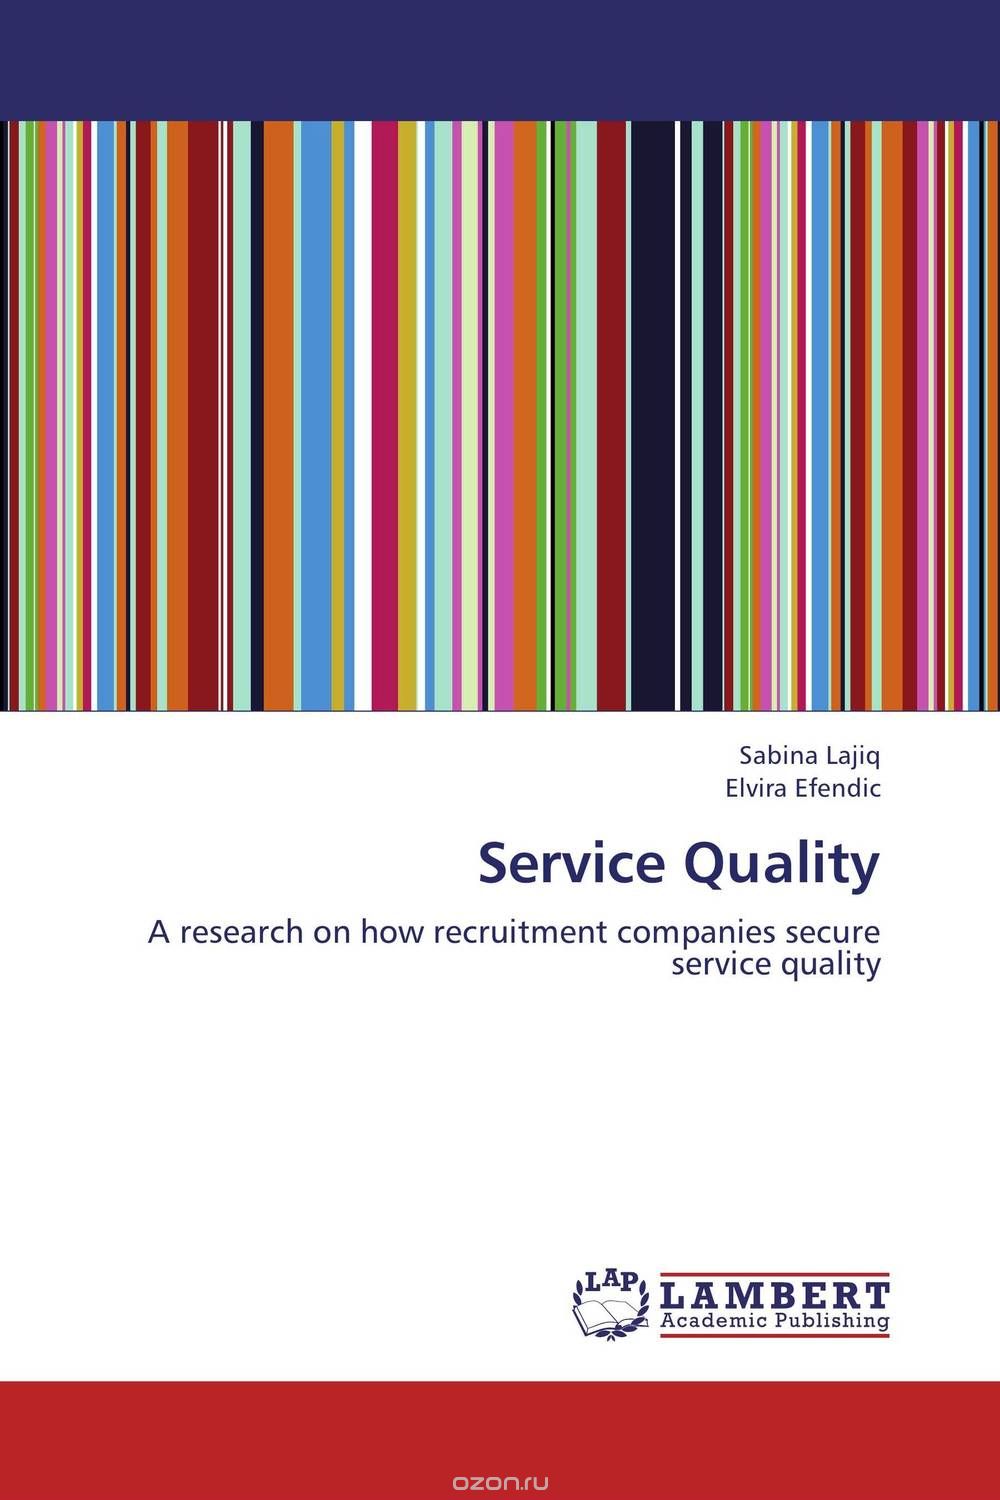 Скачать книгу "Service Quality"